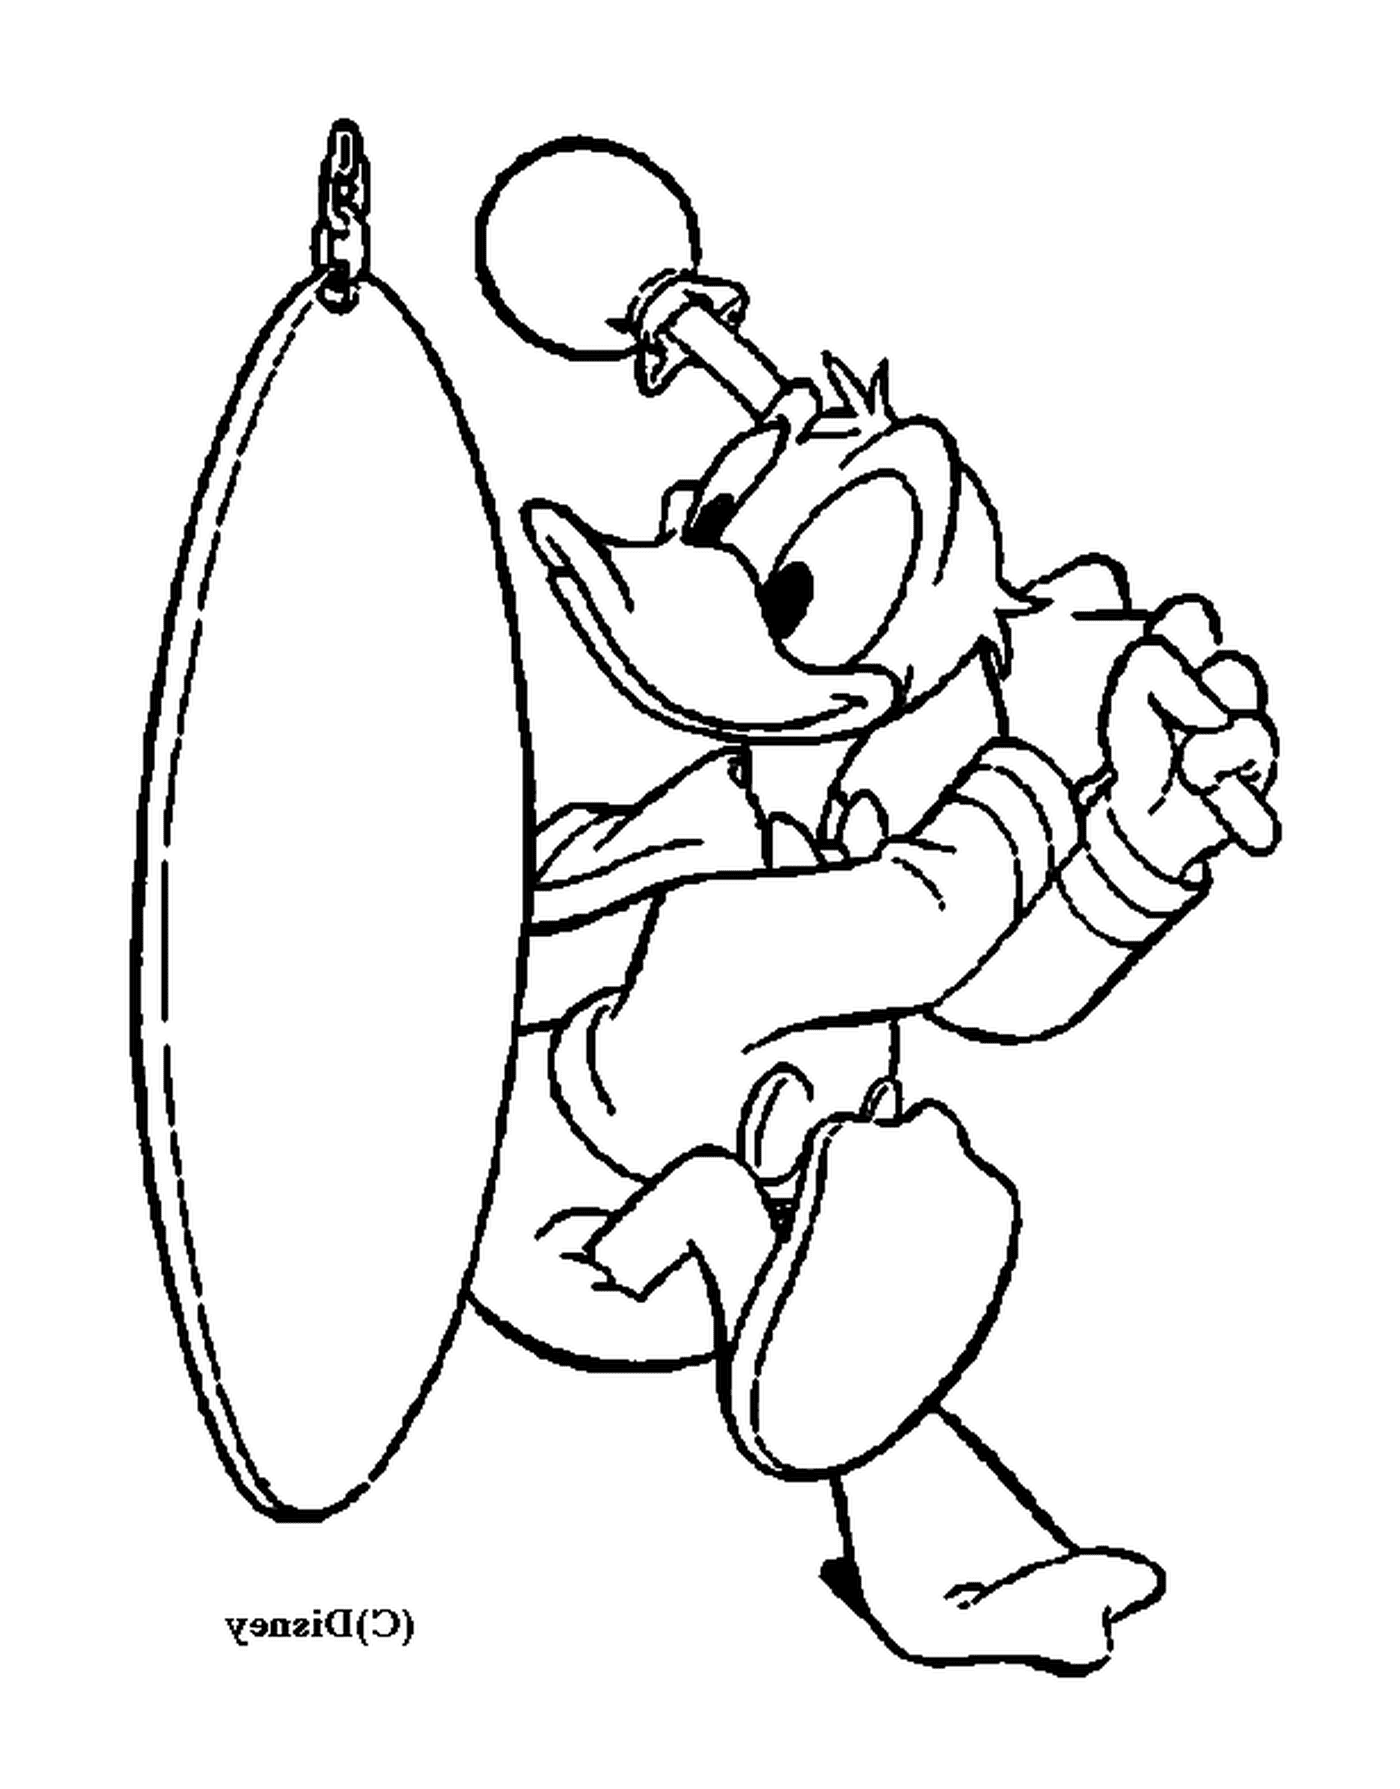  Donald vai pescar com um gongo 